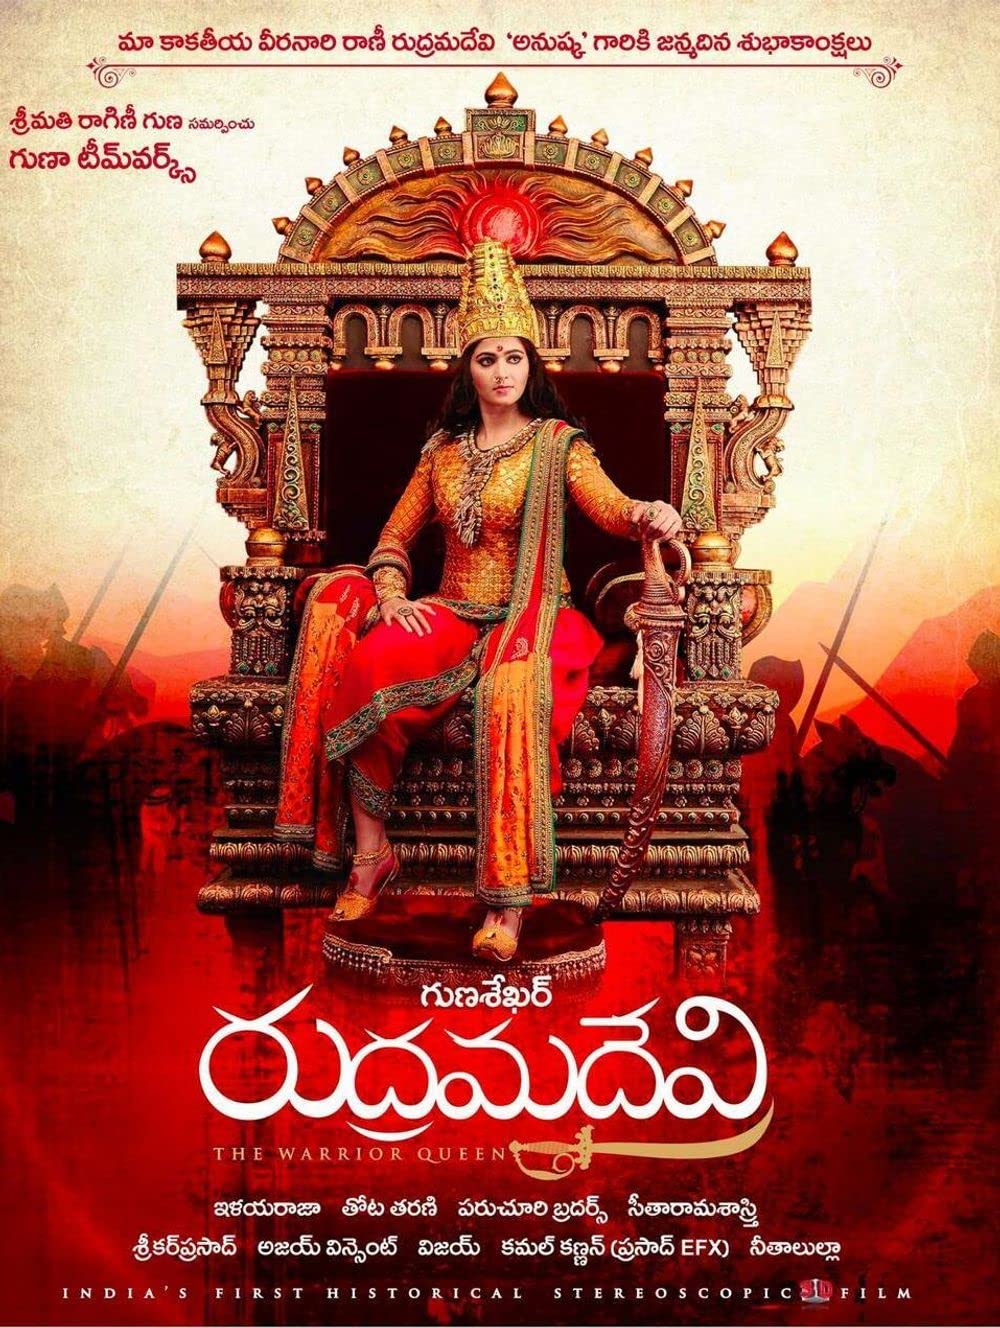 Rudramadevi is a Telugu movie